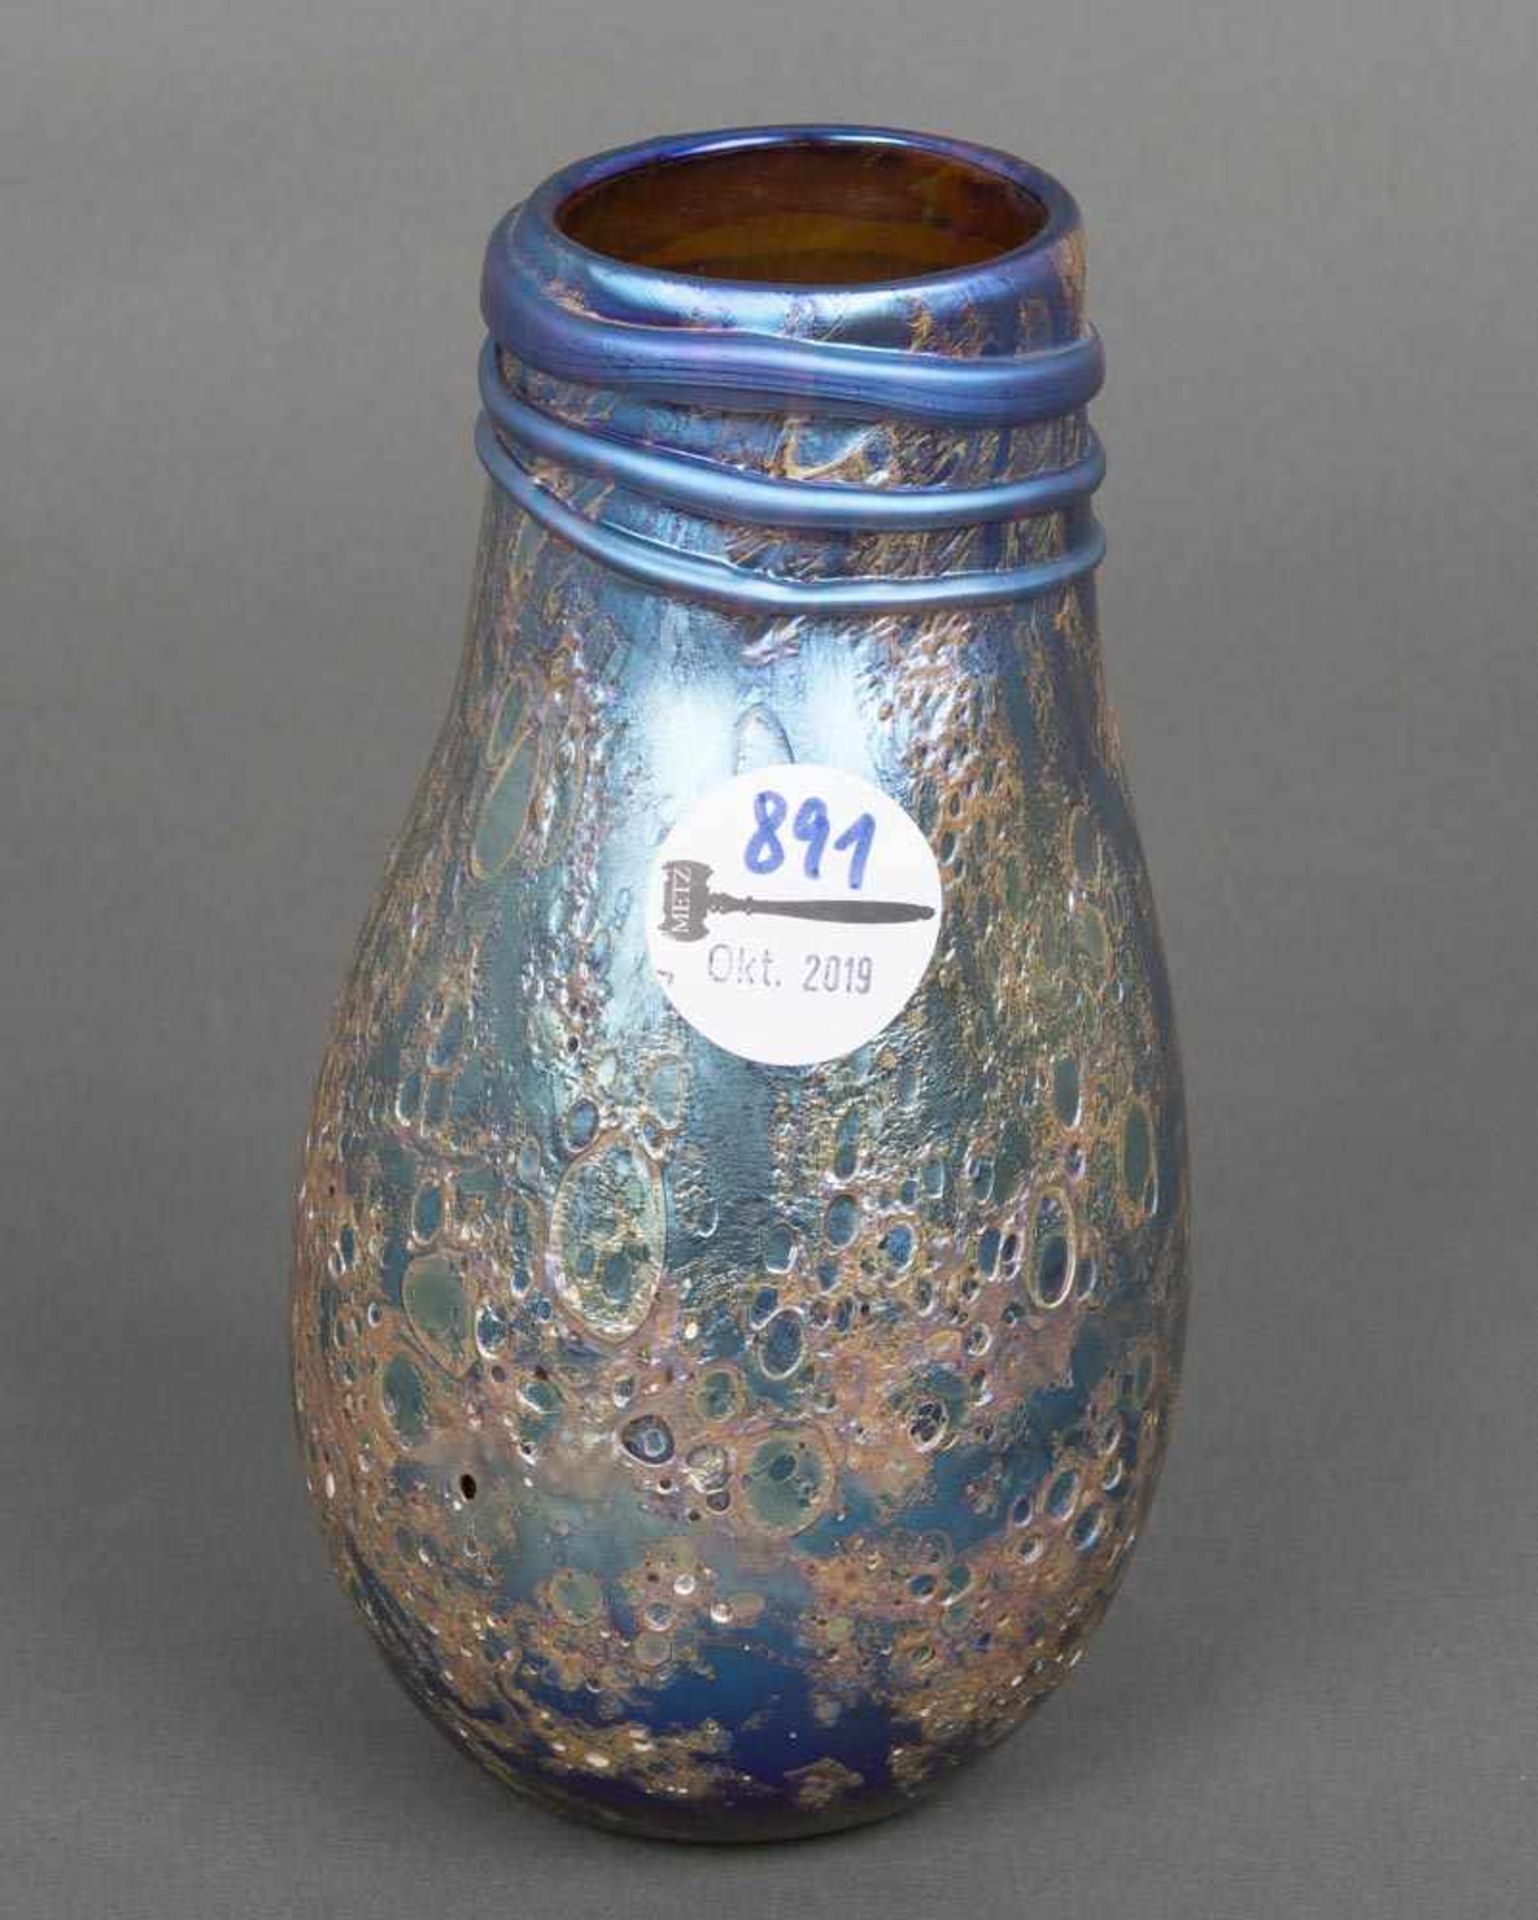 Vase. Farbloses Glas, bunt lustrierend überfangen, mit aufgeschmolzenen Fäden und Lochdekor, am